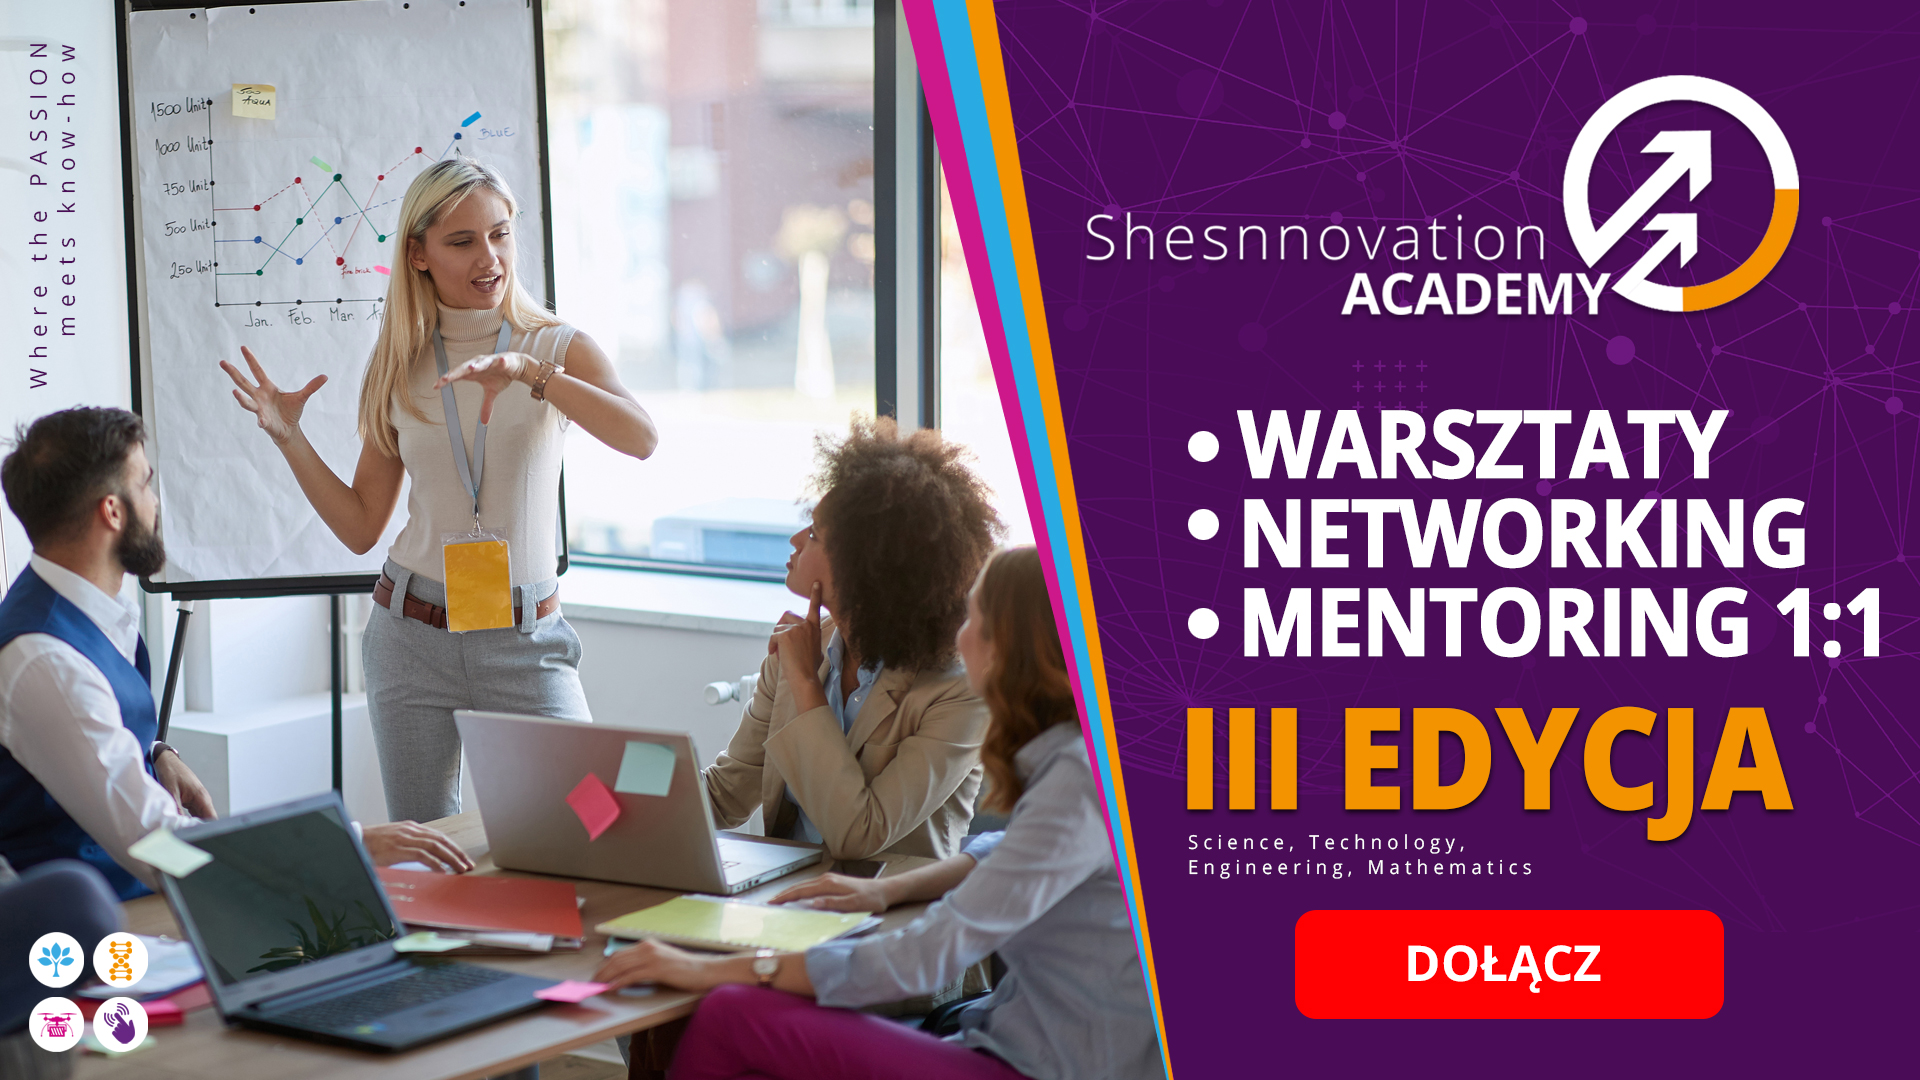 Fundacja Edukacyjna Perspektywy Women in Tech już po raz trzeci rusza ze startupową akademią adresowaną do kobiet - Shesnnovation Academy.